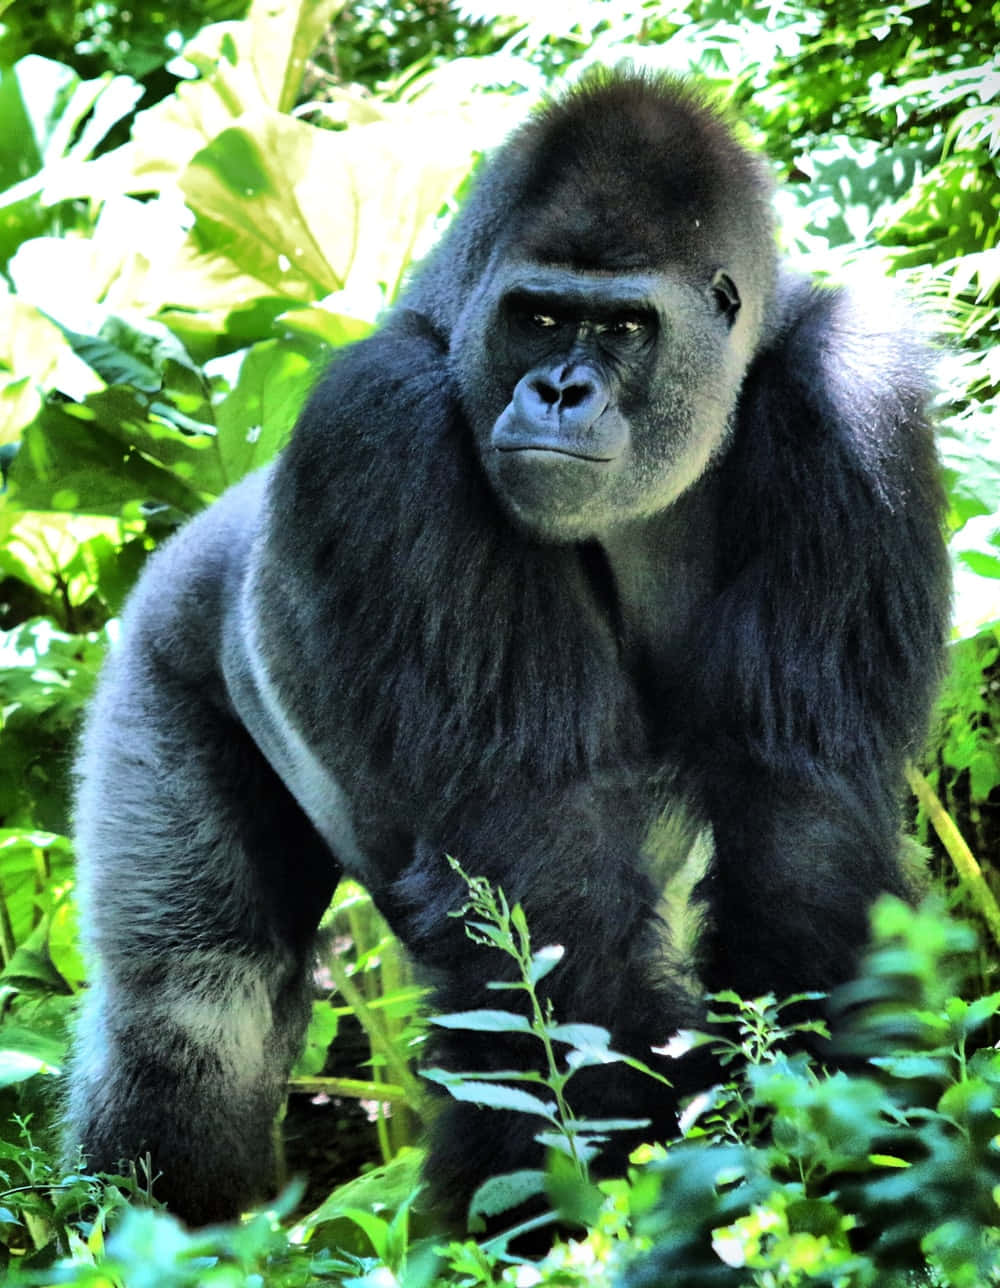 Imágenesdivertidas De Un Gorila En El Bosque